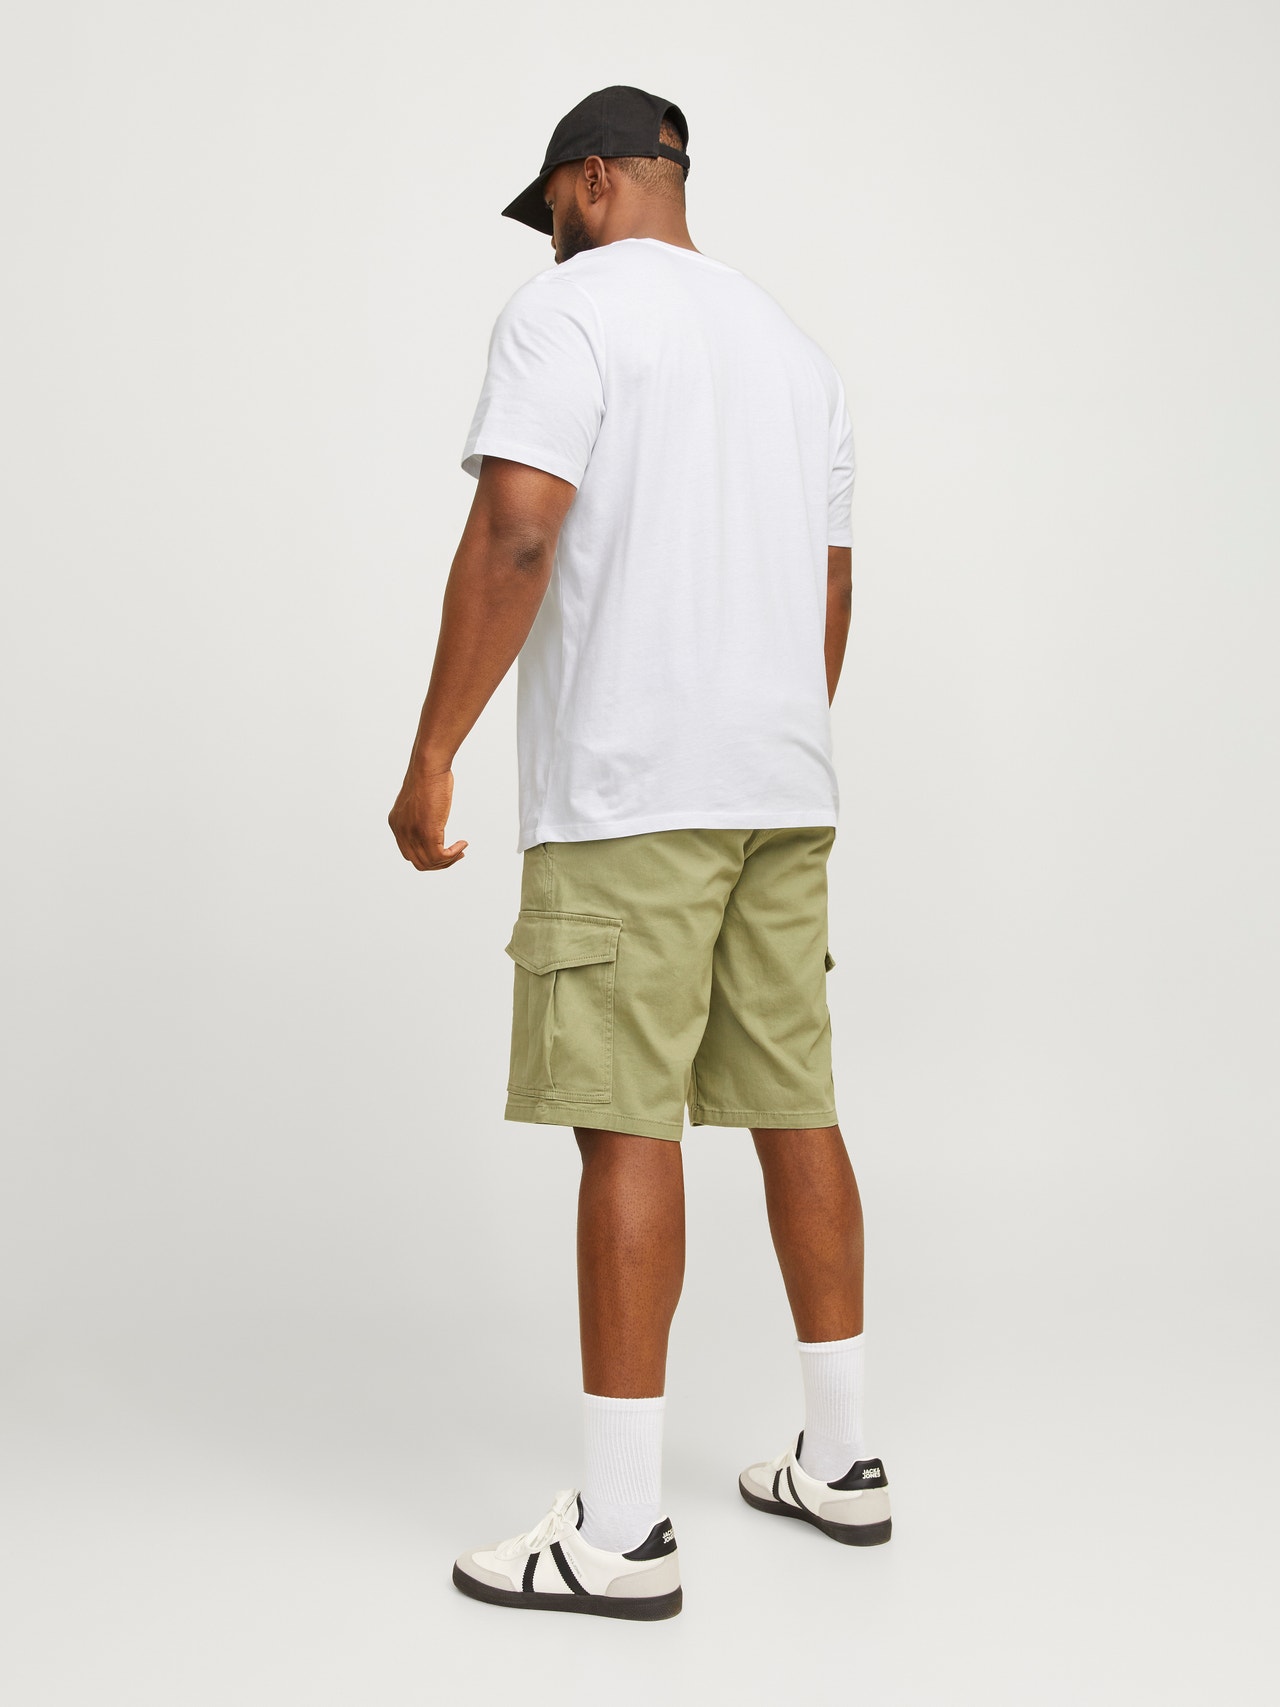 Jack & Jones Plus Size Logo T-shirt -Bright White - 12270142